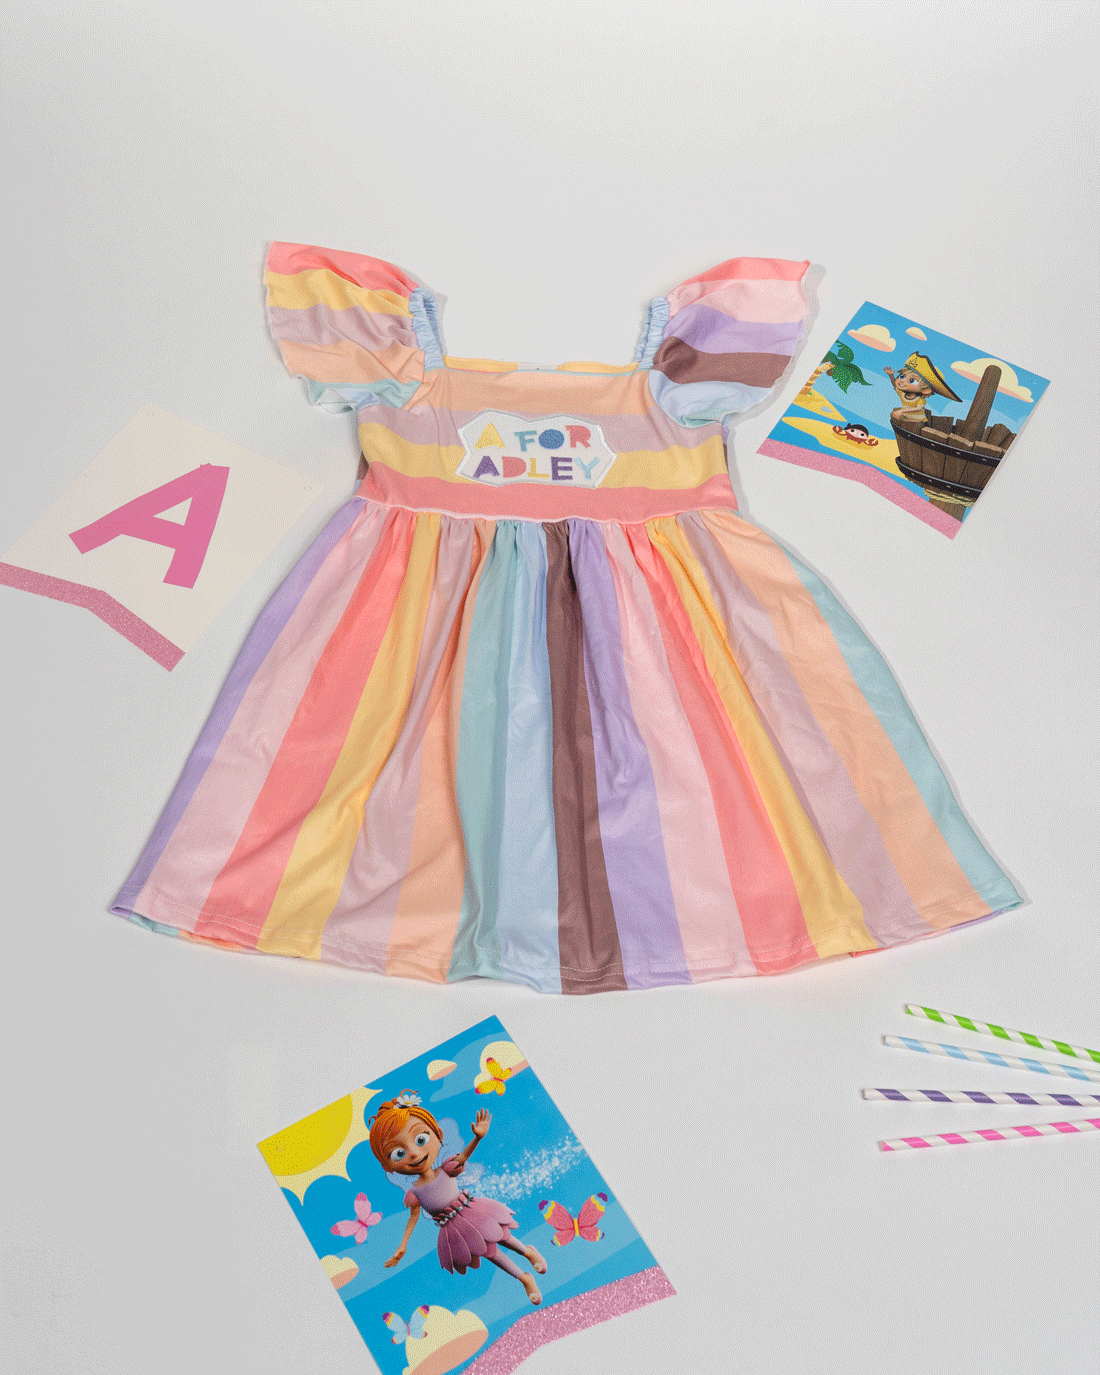 Adley's Rainbow Party Dress